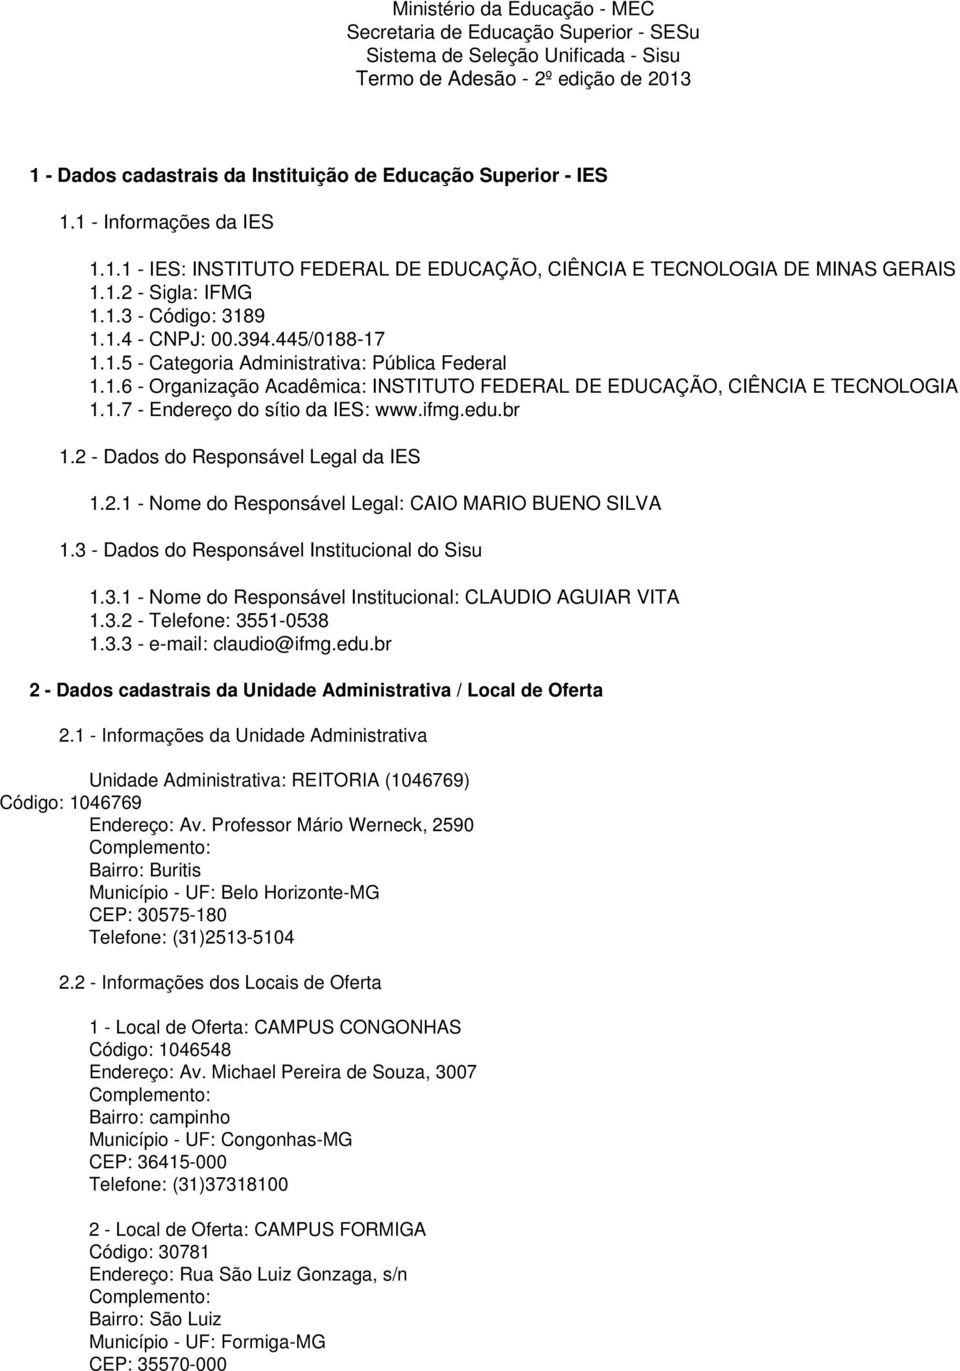 1.6 - Organização Acadêmica: INSTITUTO FEDERAL DE EDUCAÇÃO, CIÊNCIA E TECNOLOGIA 1.1.7 - Endereço do sítio da IES: www.ifmg.edu.br 1.2 - Dados do Responsável Legal da IES 1.2.1 - Nome do Responsável Legal: CAIO MARIO BUENO SILVA 1.